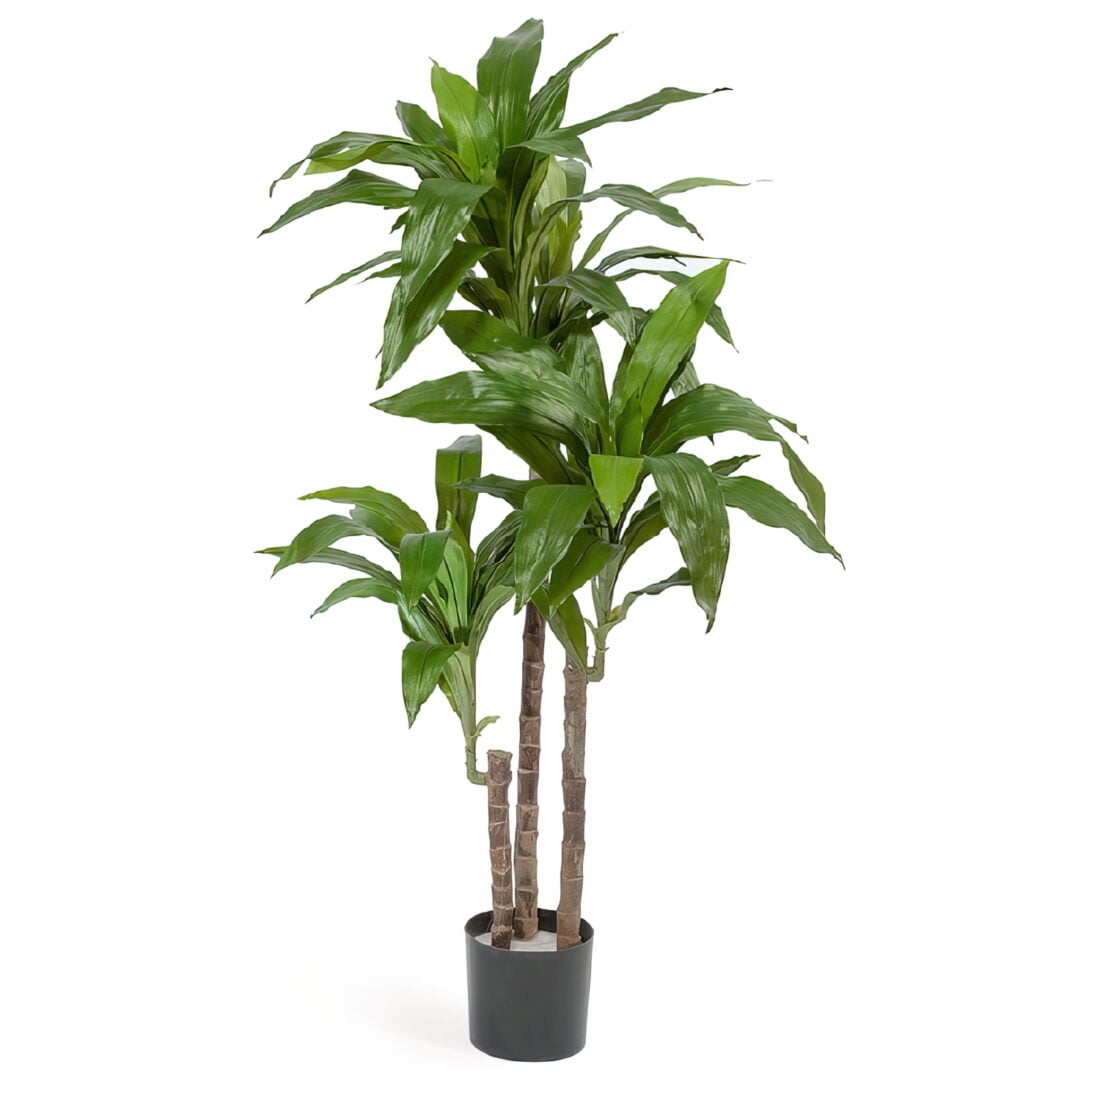 Искусственное растение Драцена Джанет Крейг зеленая, высота 125 см